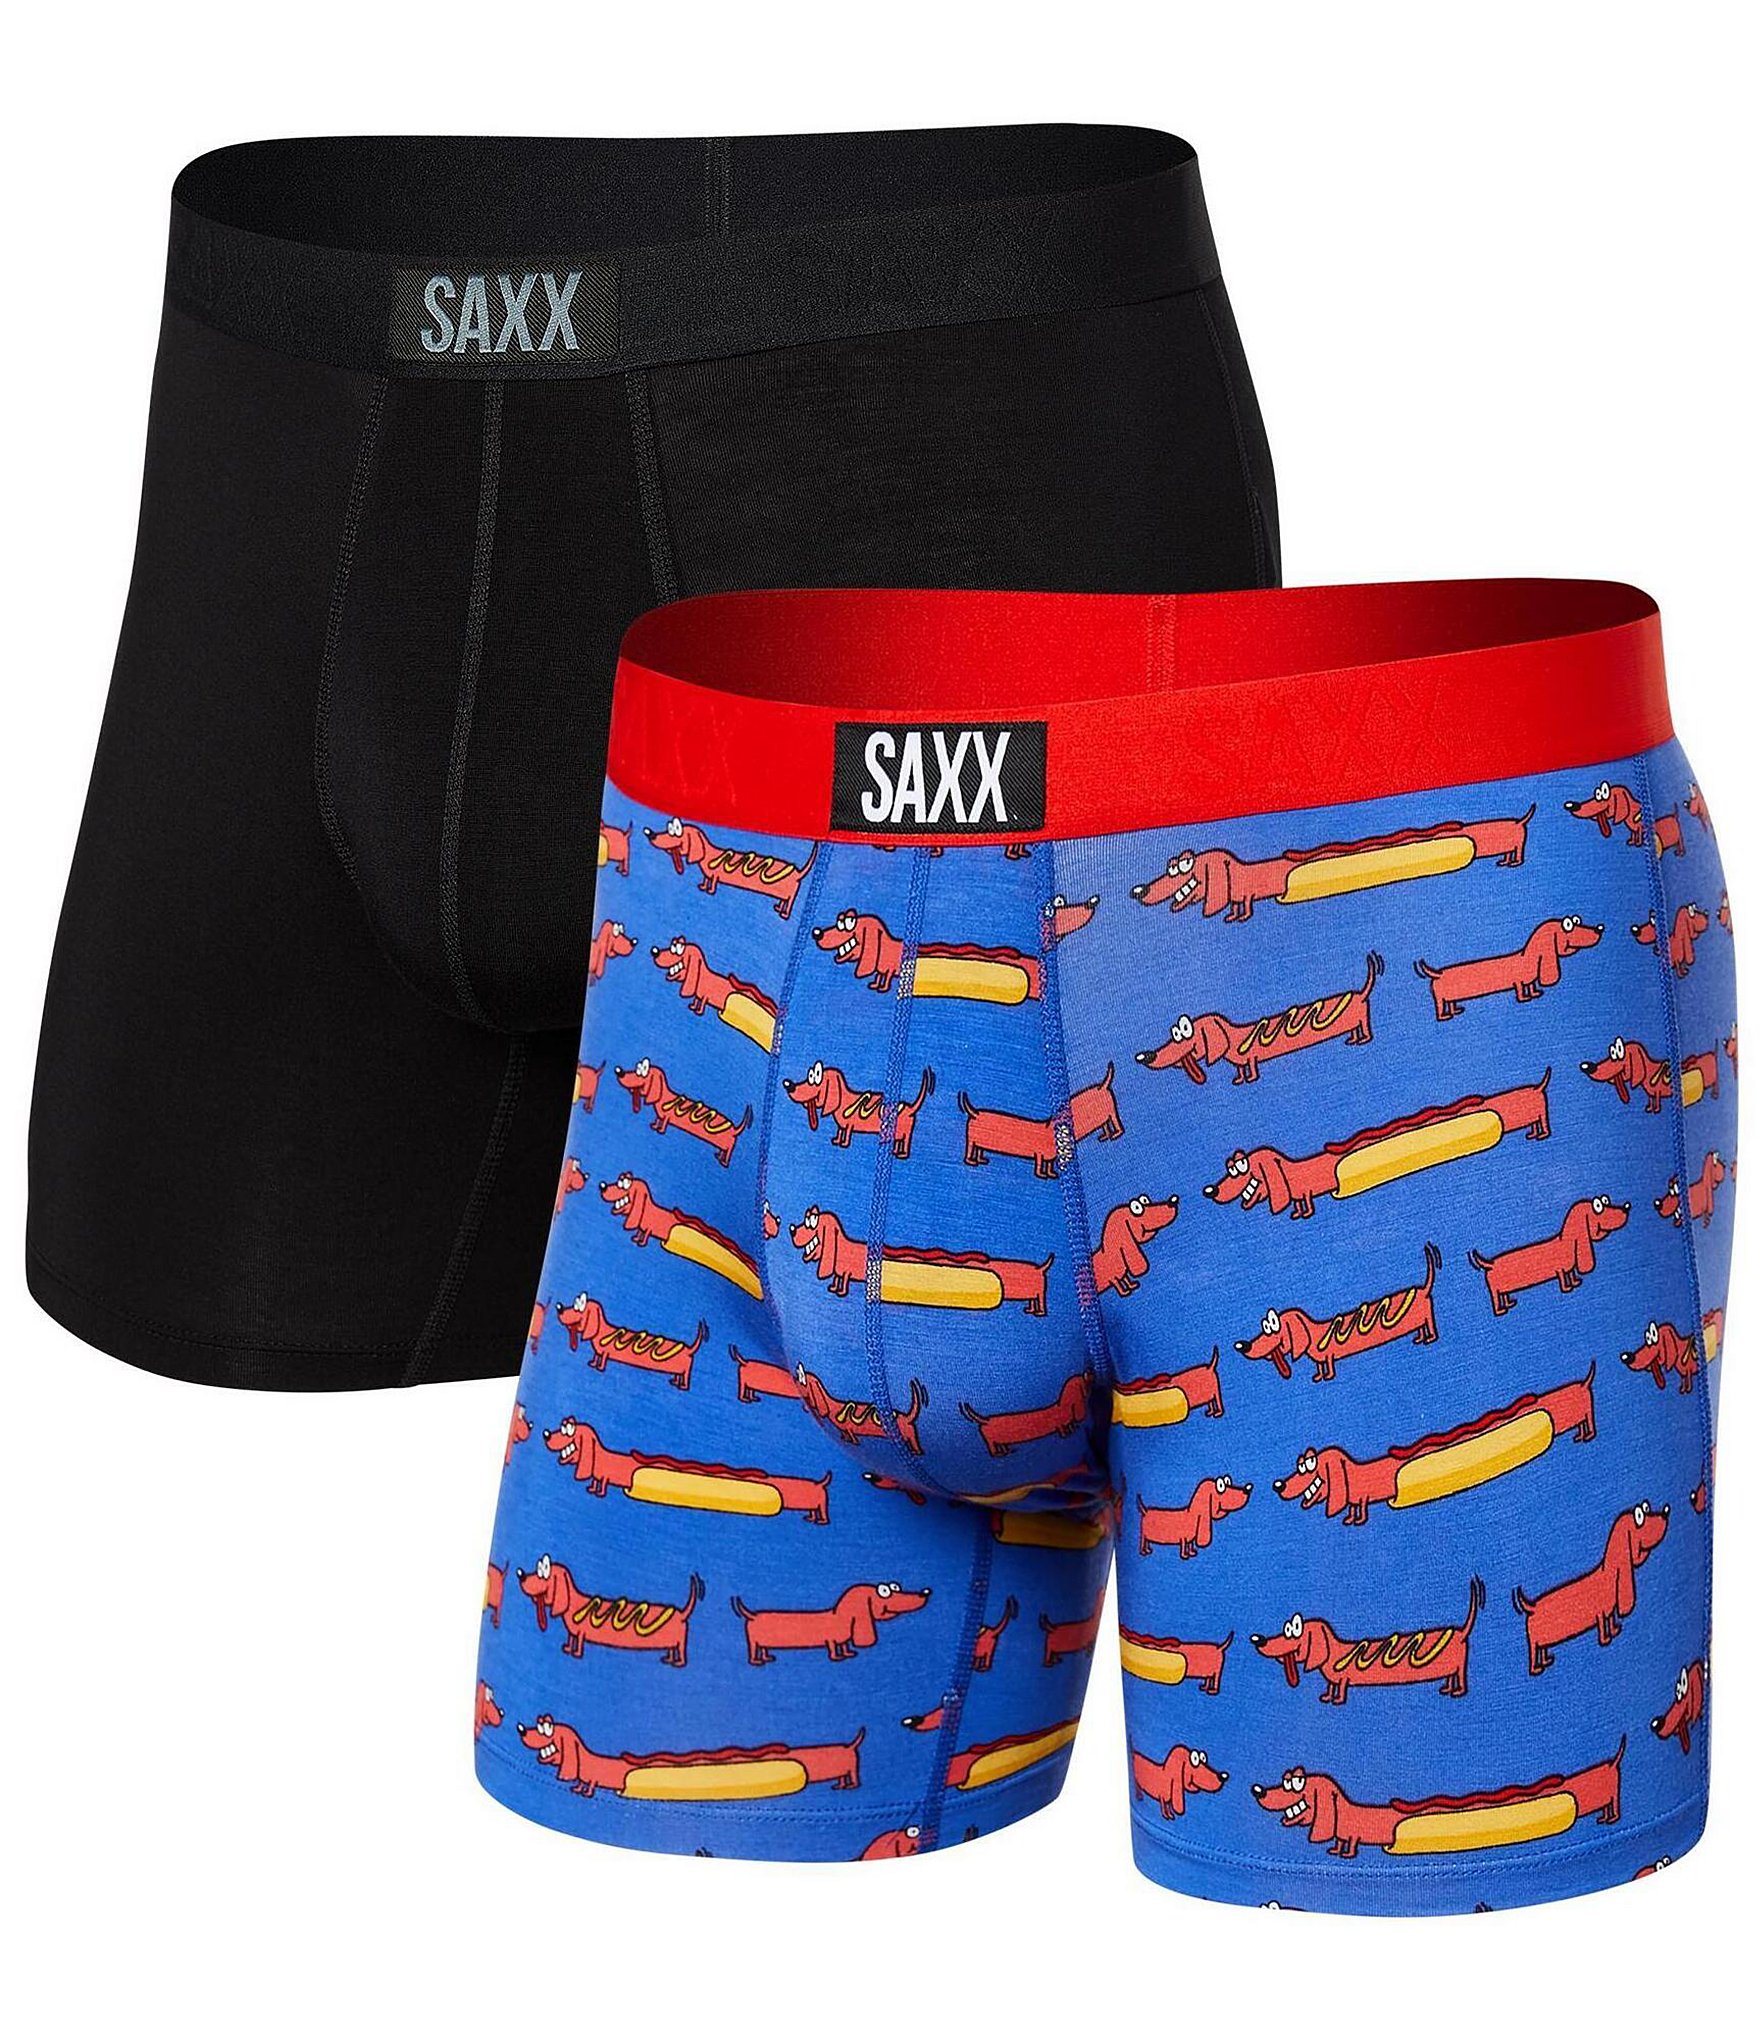 SAXX Weiner Dog/Solid Boxer Briefs 2-Pack